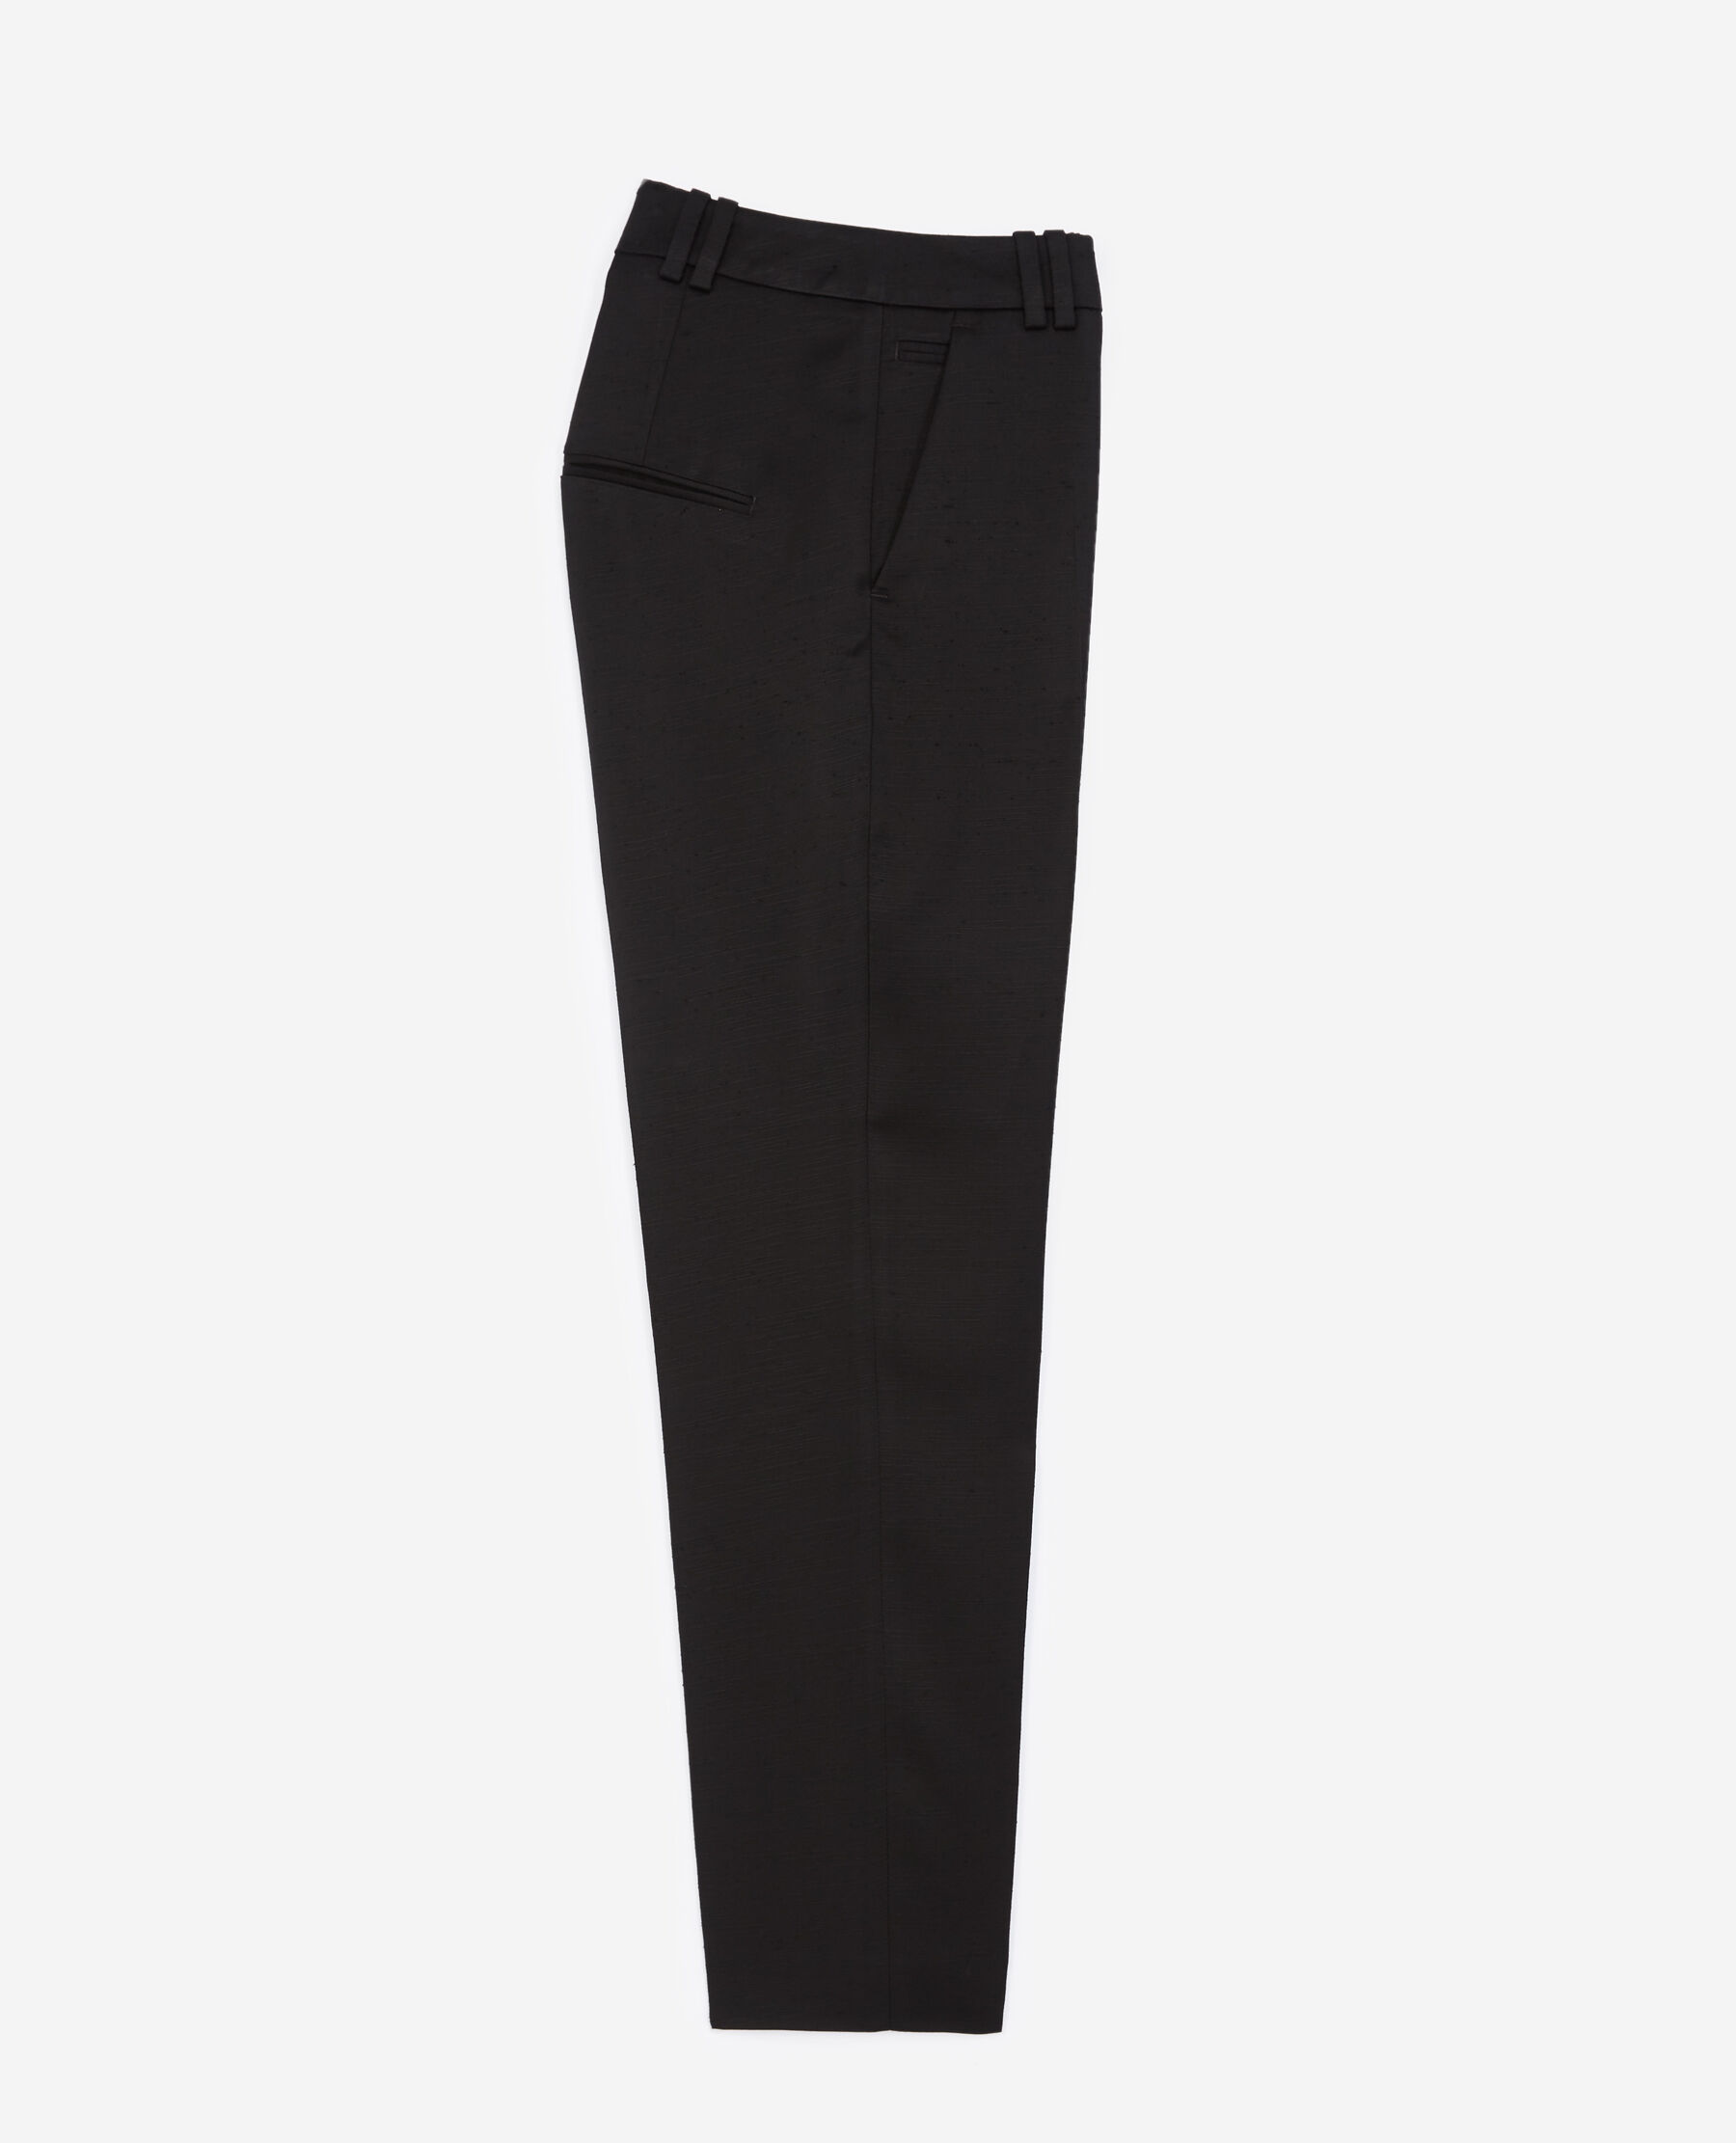 Calvin Klein Slim Fit Suit Separates Pants | Pants| Men's Wearhouse